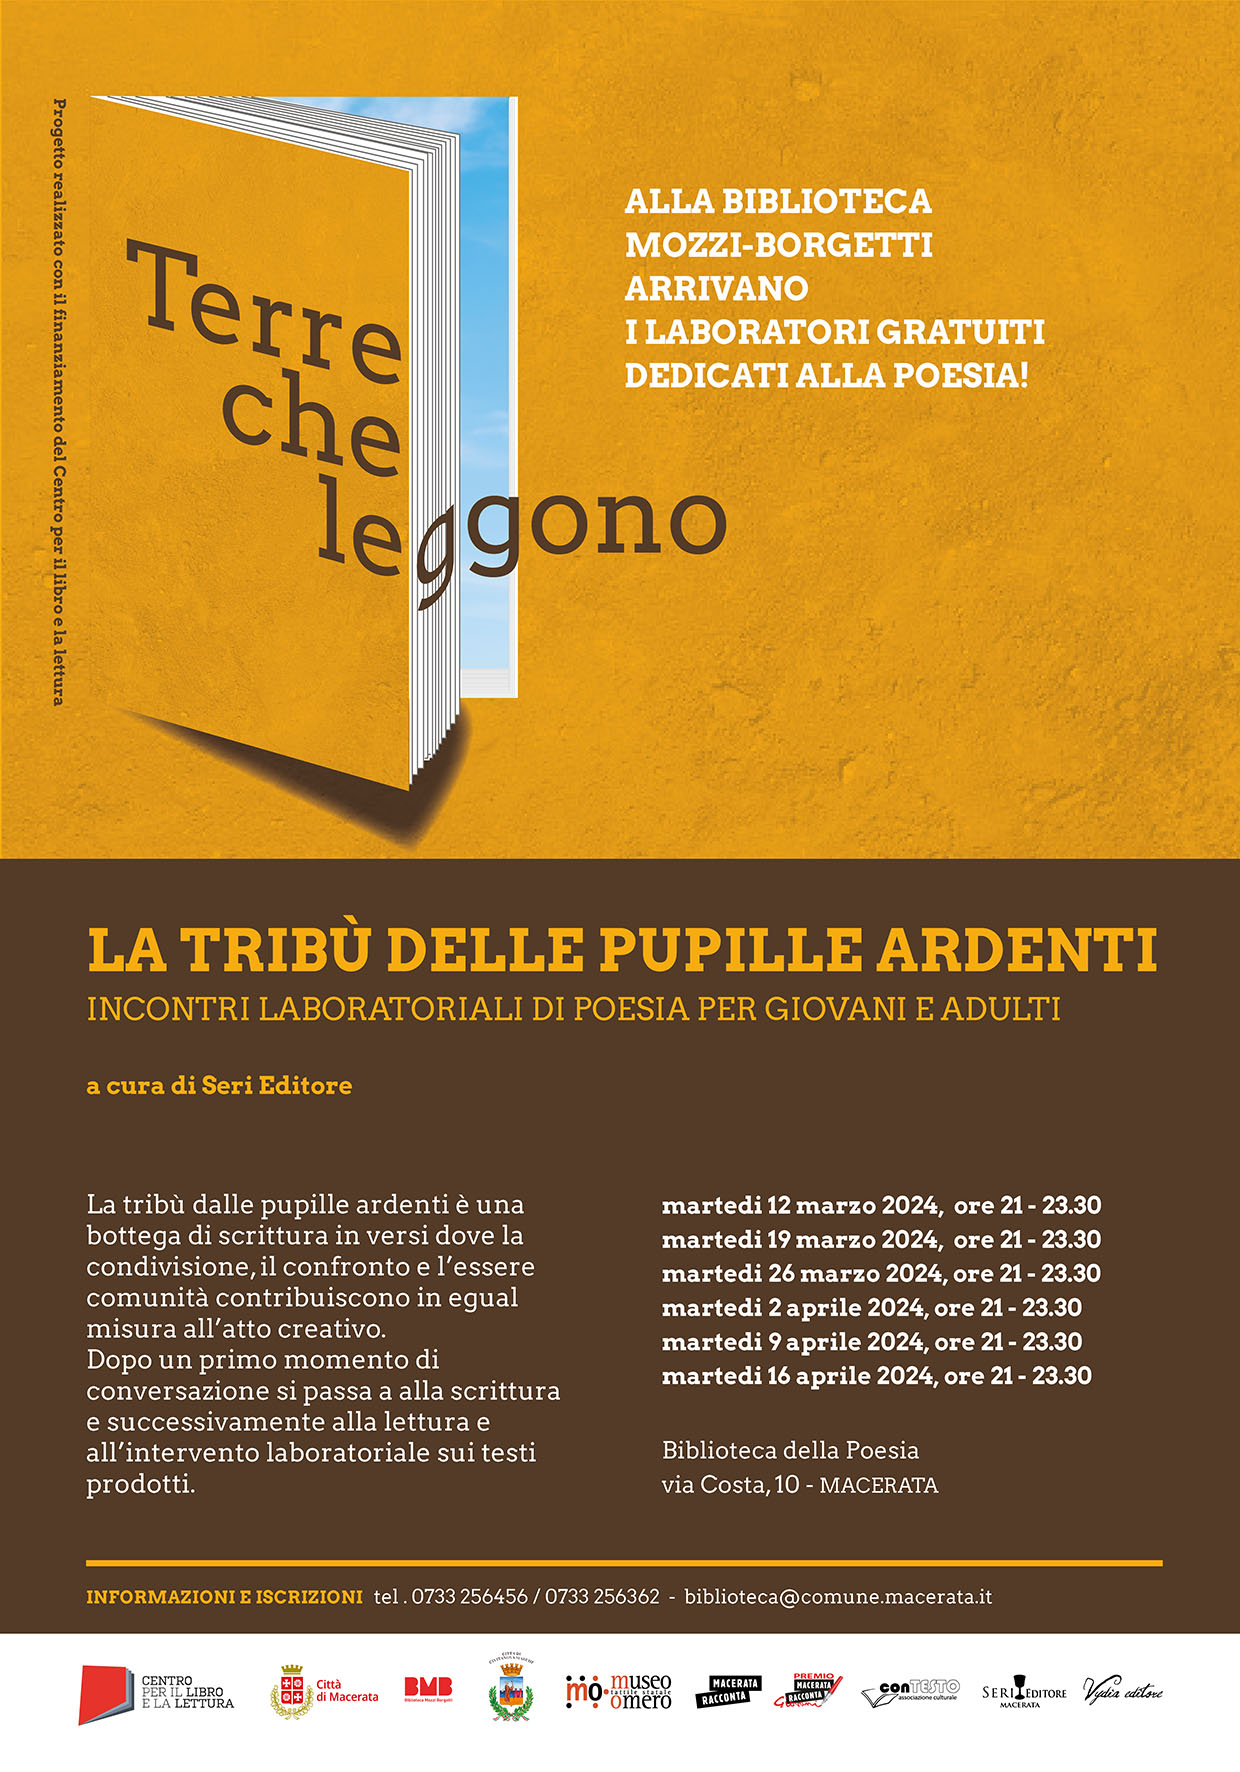 progetto “Terre che leggono” presso la biblioteca Mozzi Borgetti - Musei Macerata